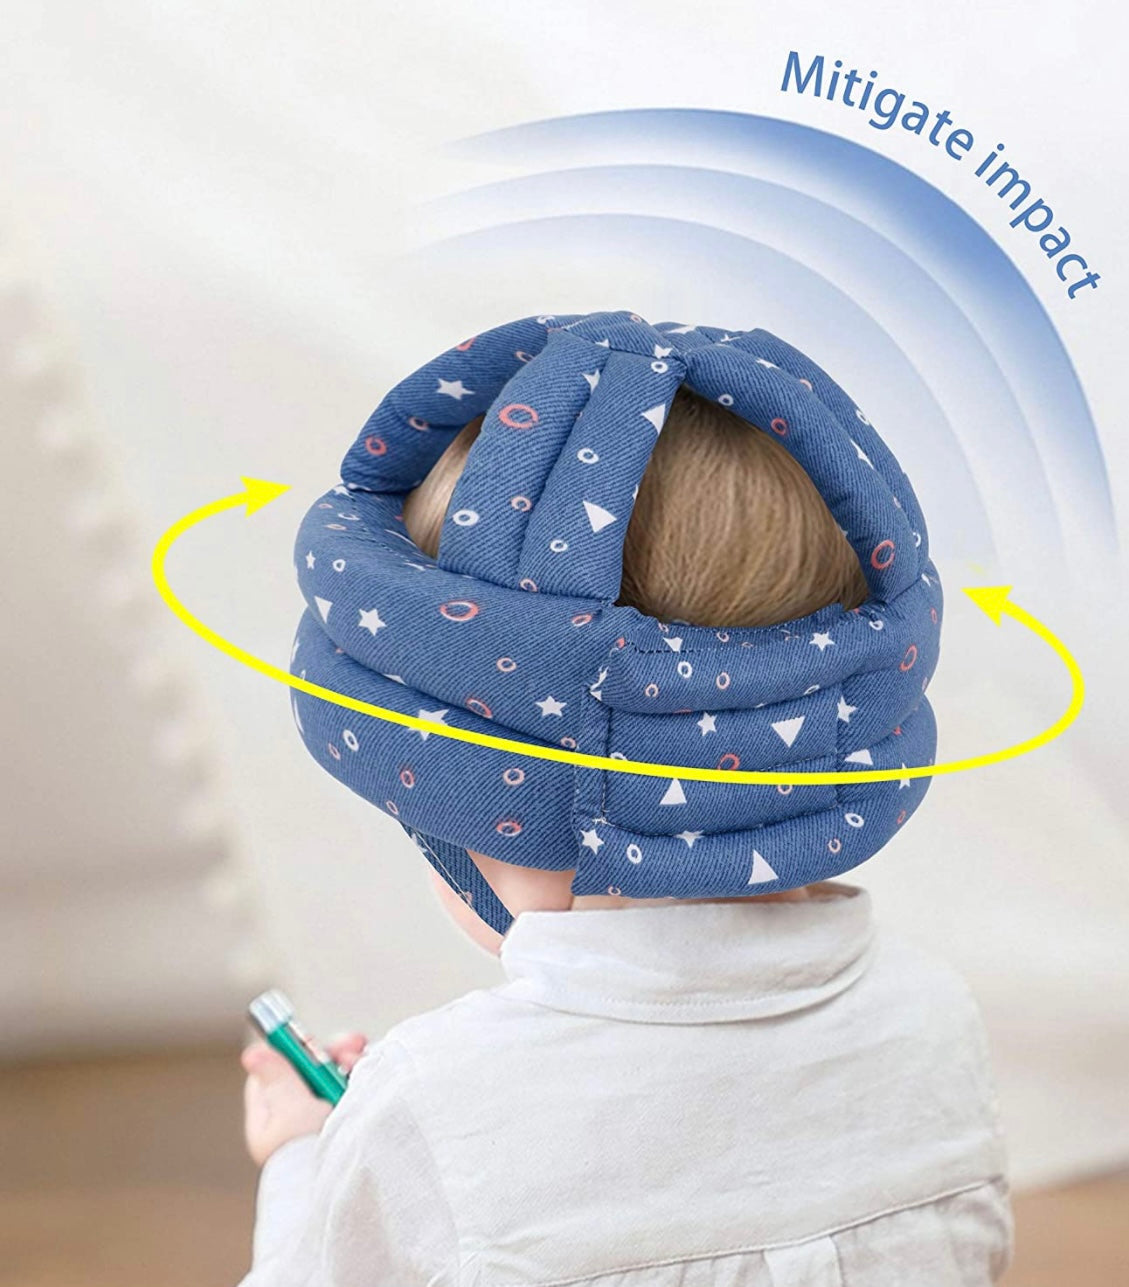 Baby headgear